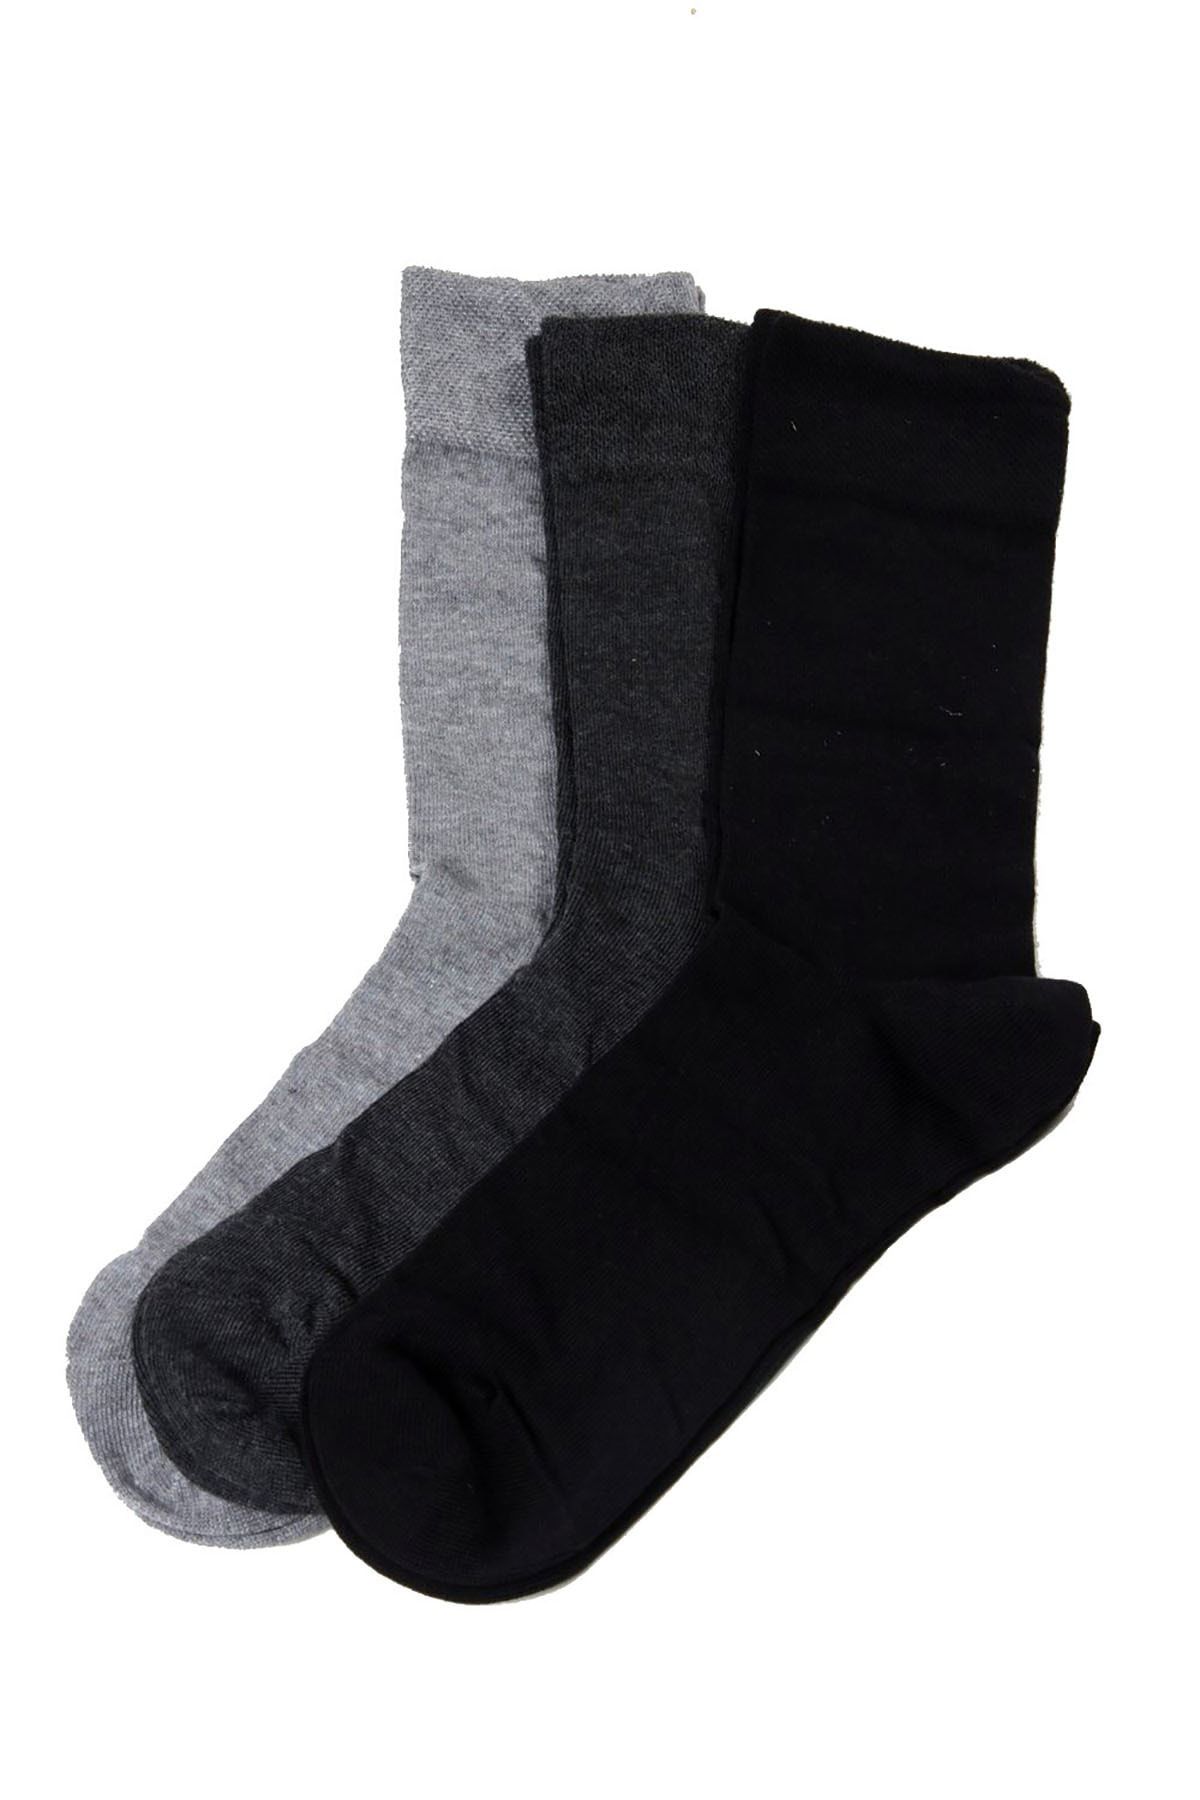 Darkzone Erkek Siyah-Gri-Antrasit 3'lü Soket Çorap